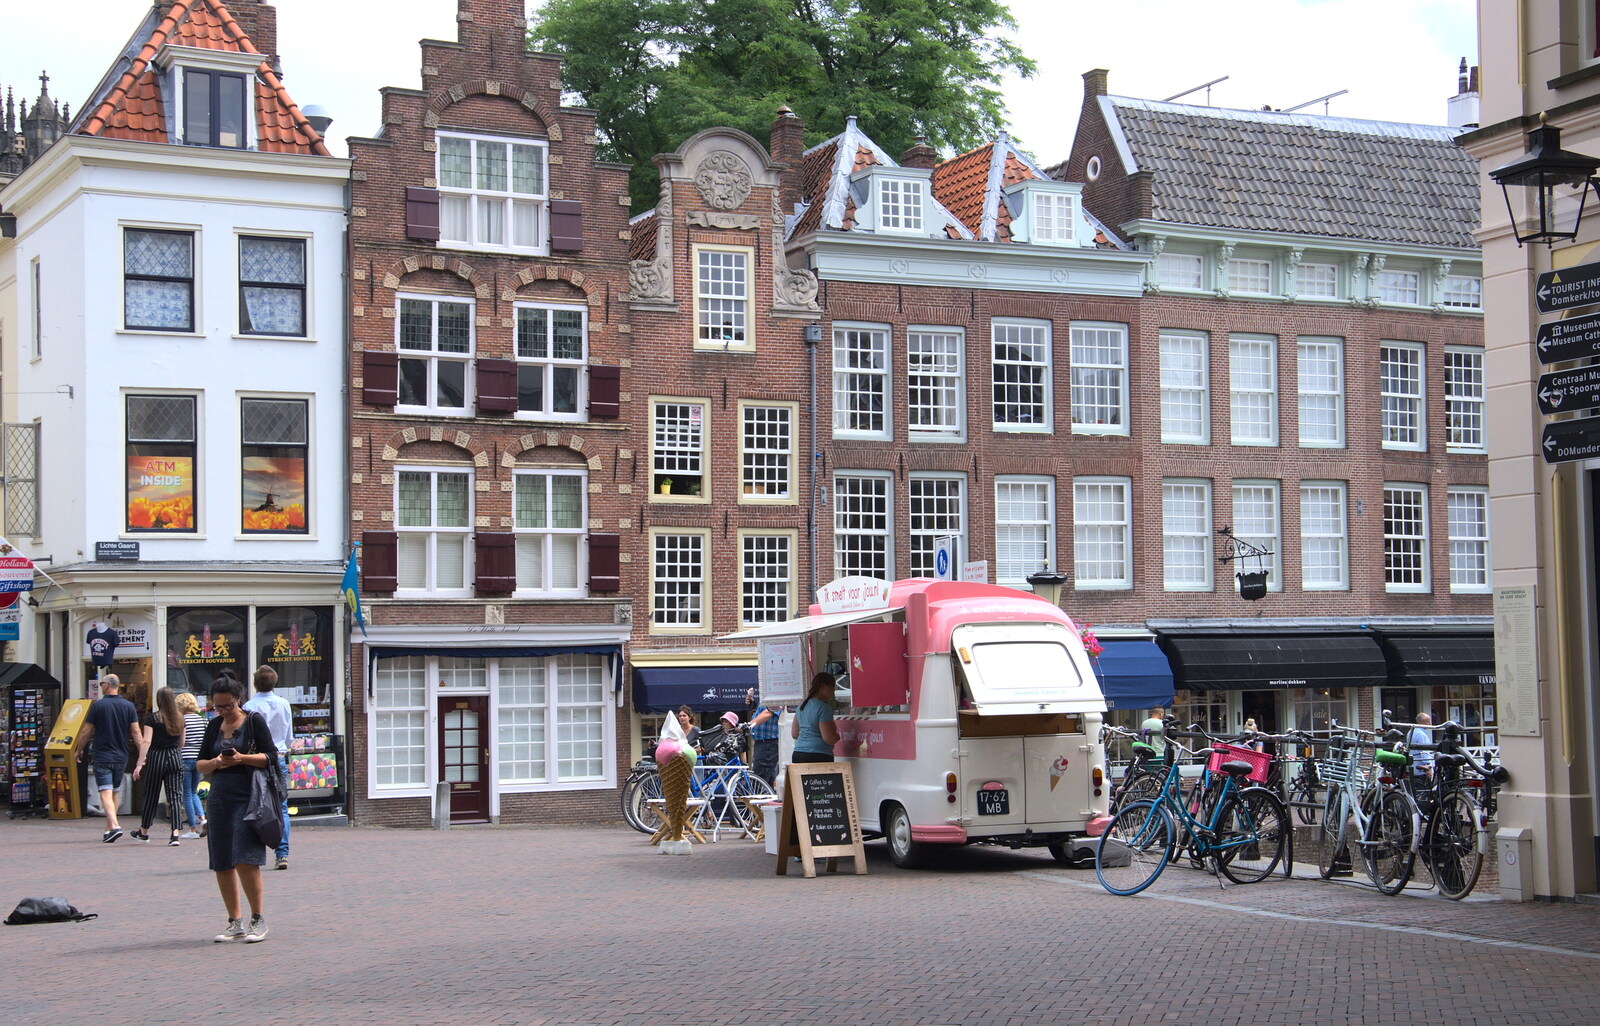 An ice-cream van from A Postcard from Utrecht, Nederlands - 10th June 2018